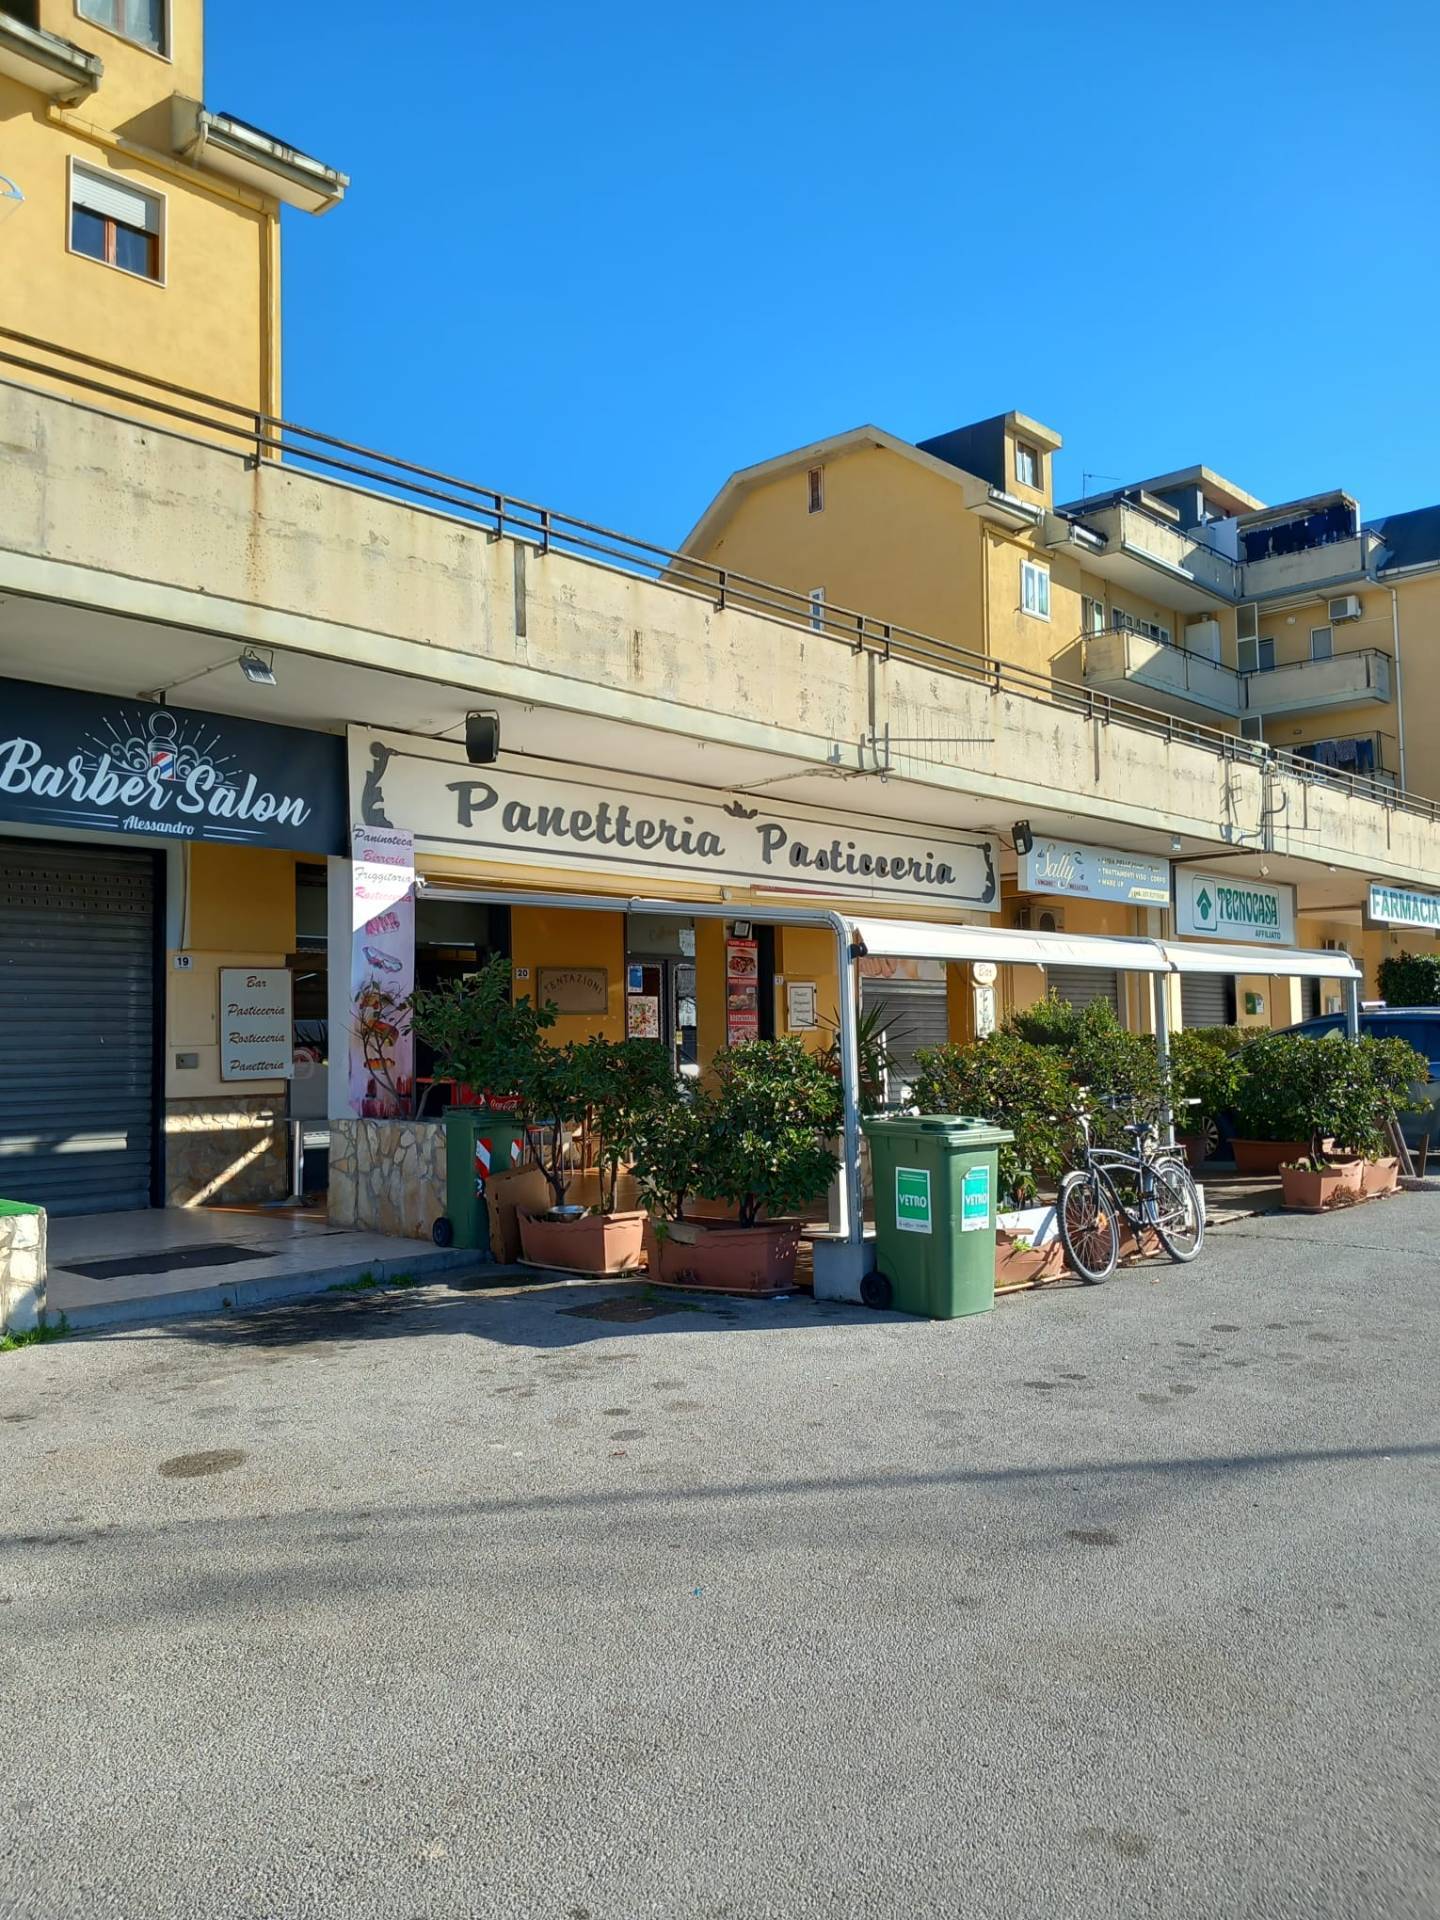 Attività / Licenza in vendita a Montecorvino Pugliano, 9999 locali, prezzo € 60.000 | PortaleAgenzieImmobiliari.it